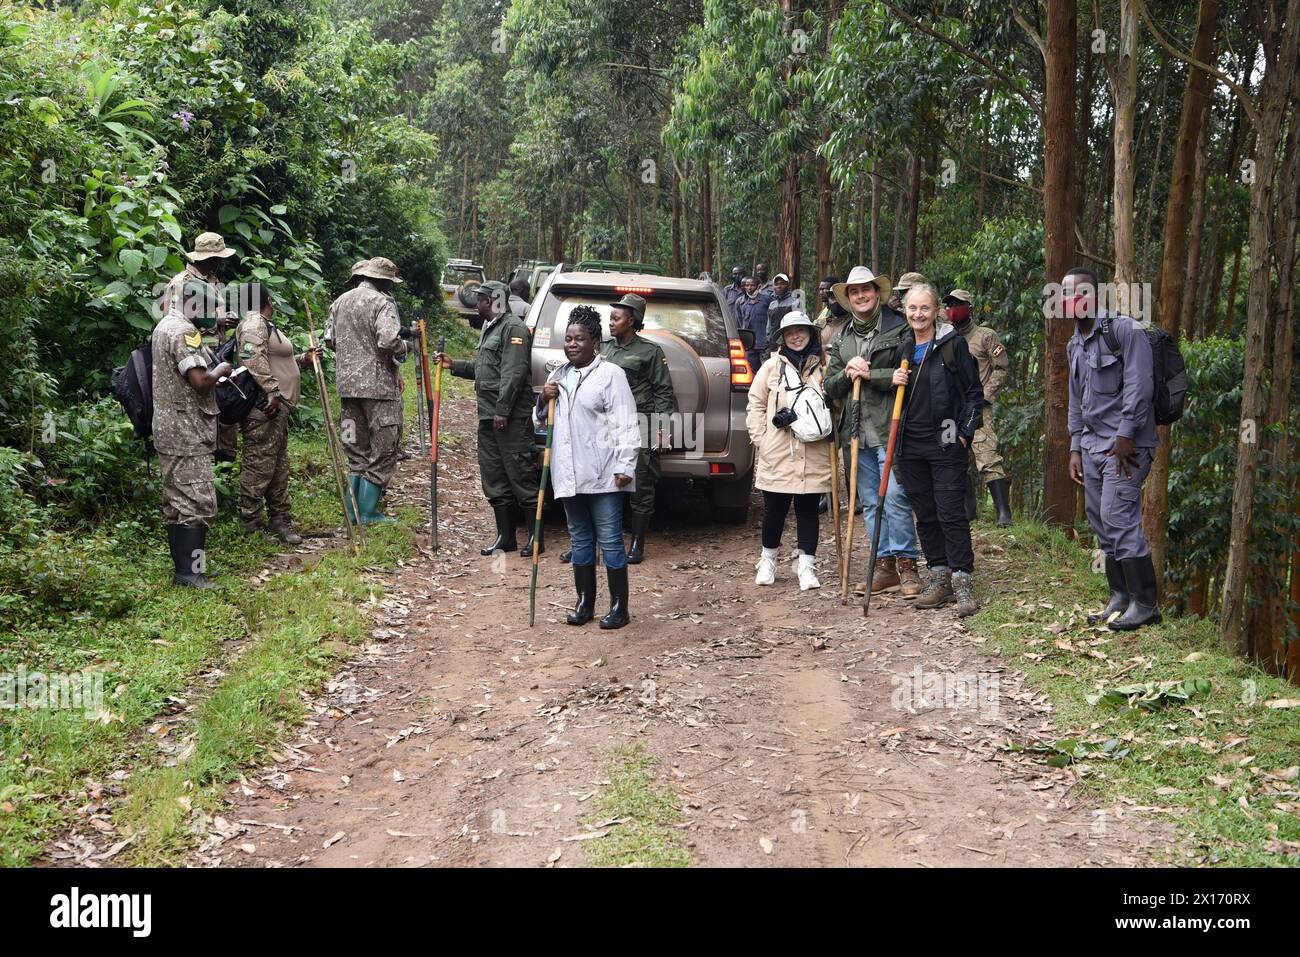 Scène animée alors que les touristes, les guides et les responsables du parc se préparent pour une randonnée de gorilles au milieu des forêts verdoyantes et humides de Bwindi, avec des jeeps safari en plus Banque D'Images